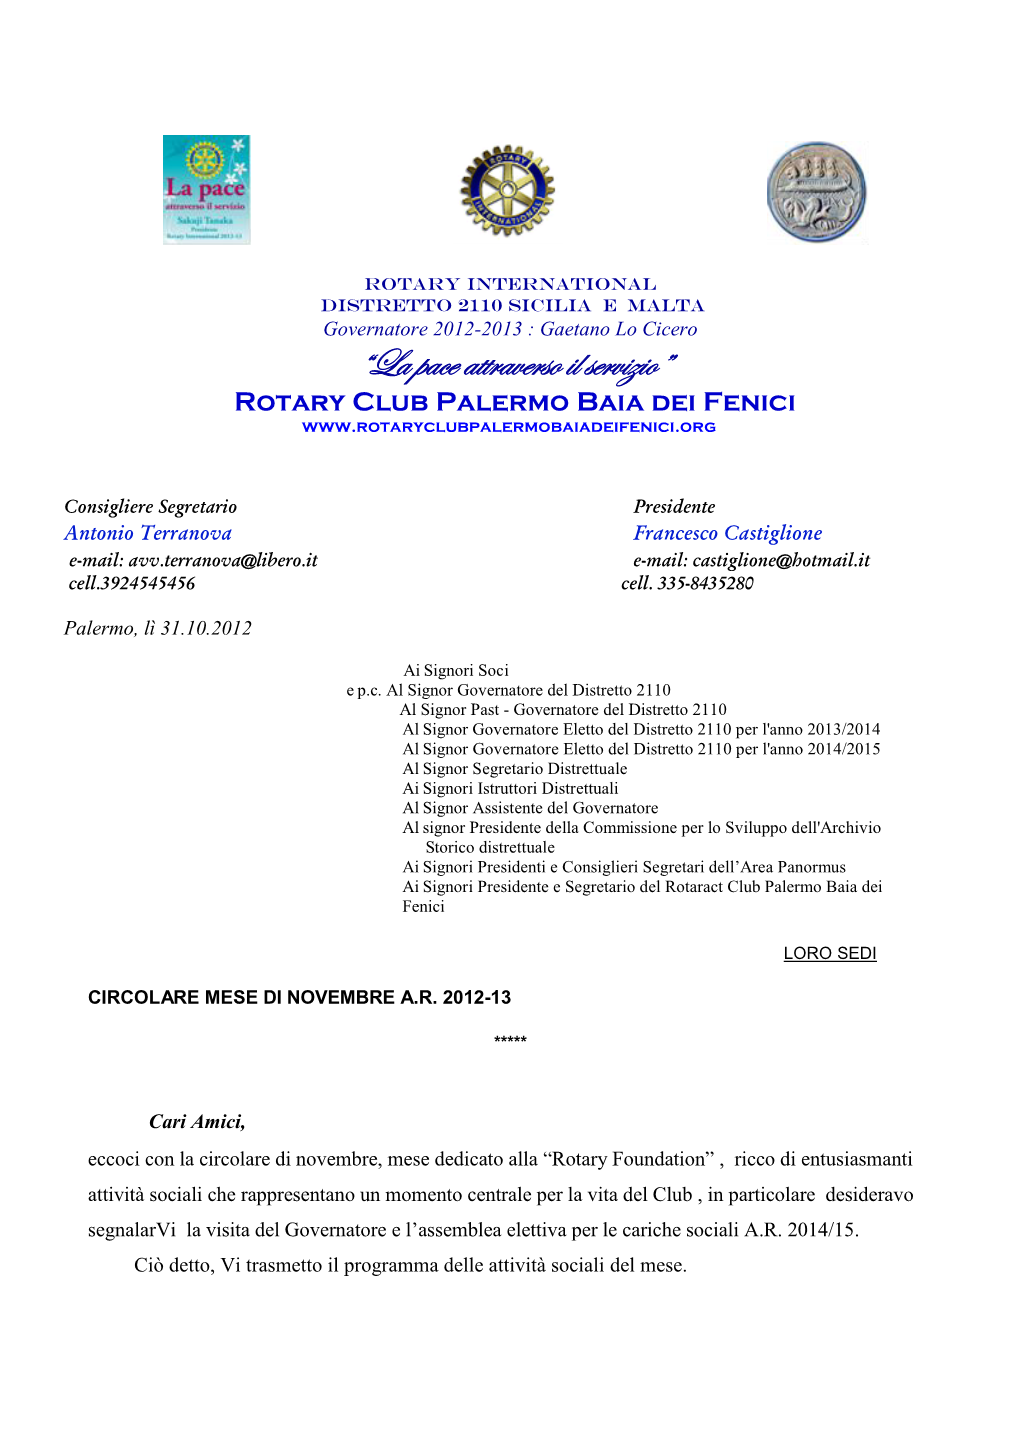 “La Pace Attraverso Il Servizio” Rotary Club Palermo Baia Dei Fenici